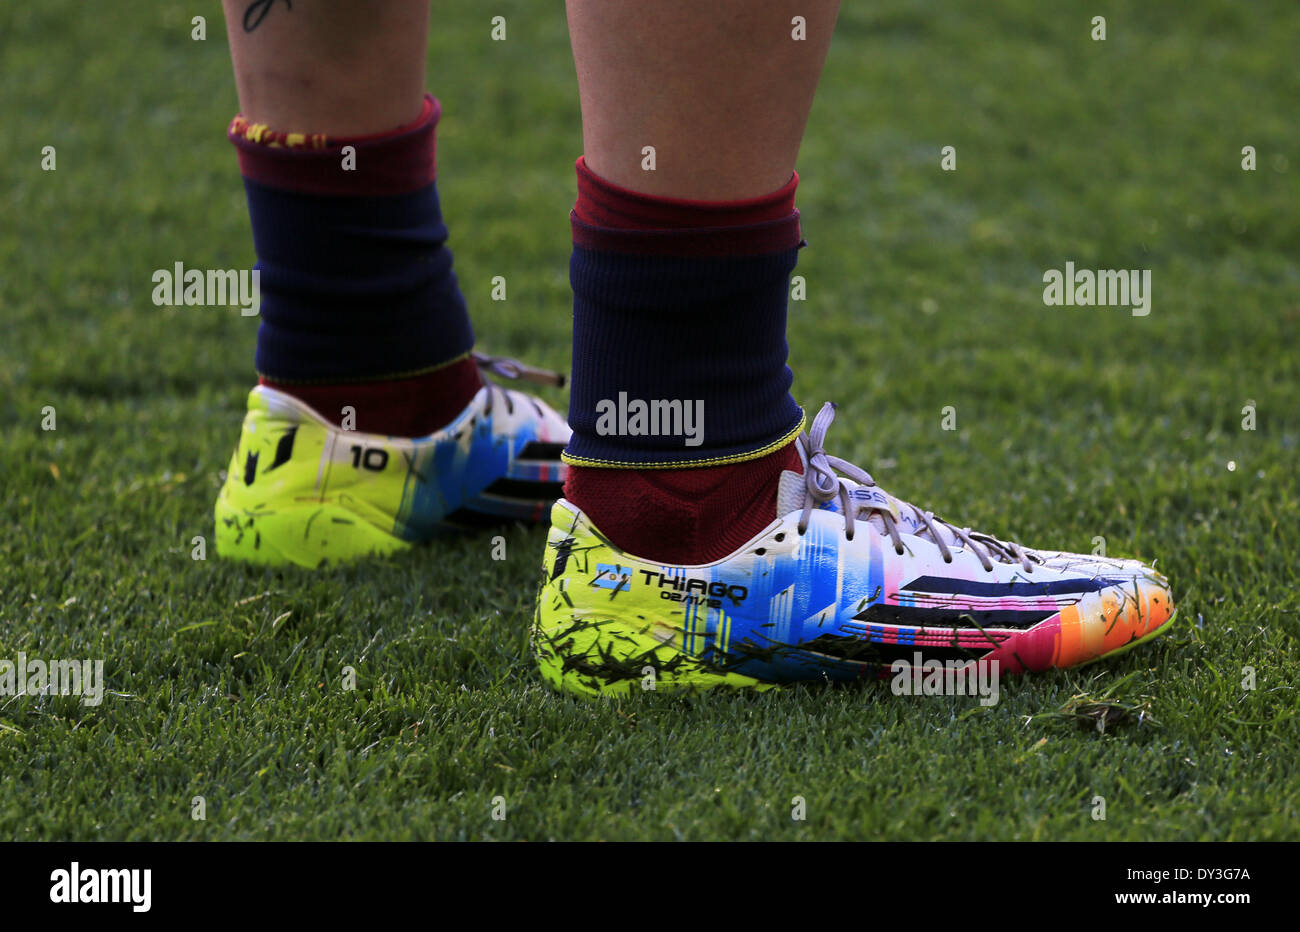 Barcelona, España. 5 abr, 2014. Los zapatos de Leo en el partido entre el FC Barcelona y el Betis en la semana 32 de la liga española, jugó en el Camp